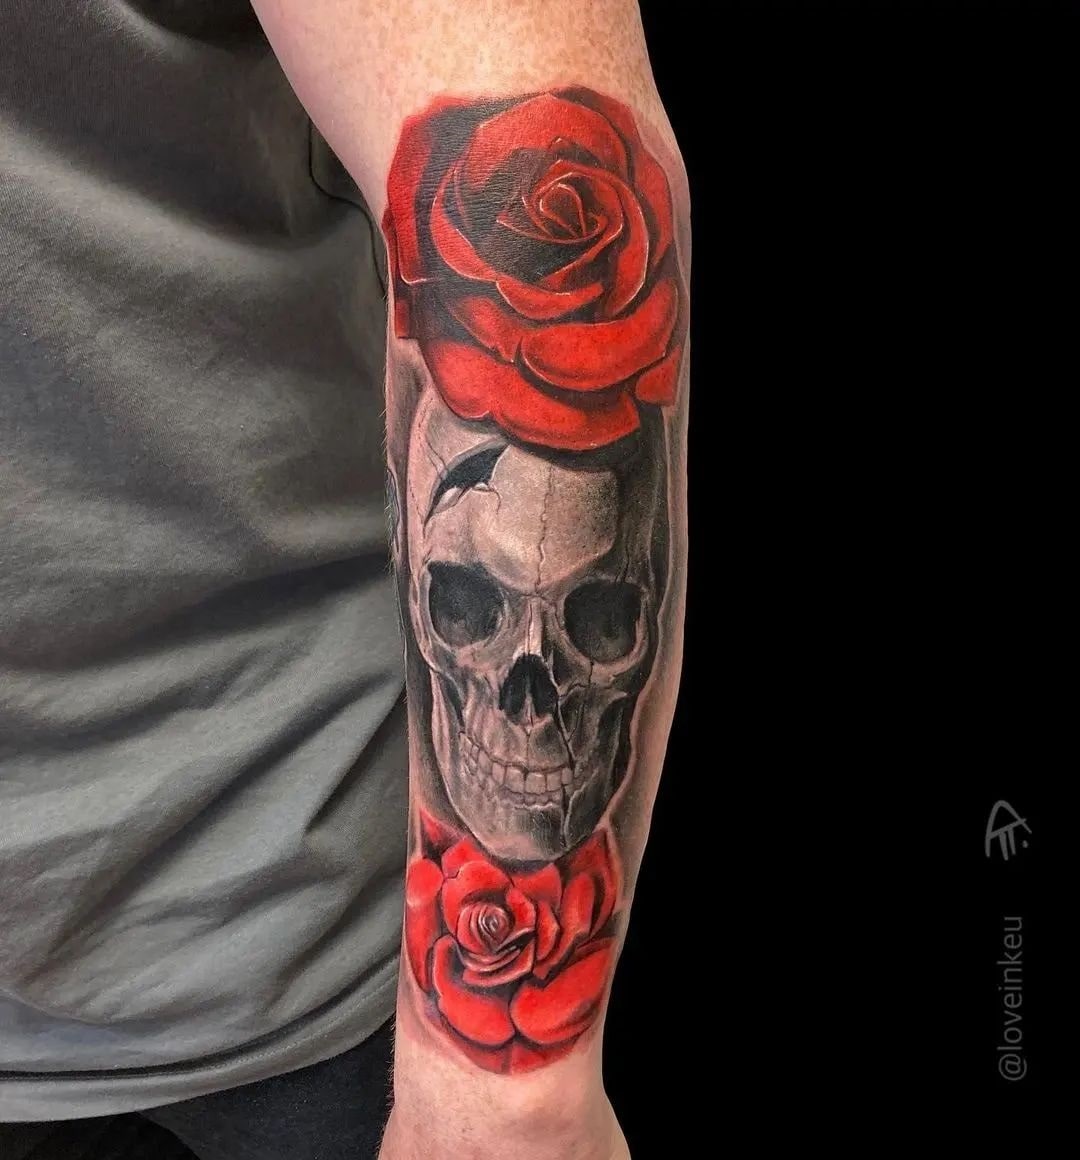 Tatuaż czaszki i róży na przedramieniu